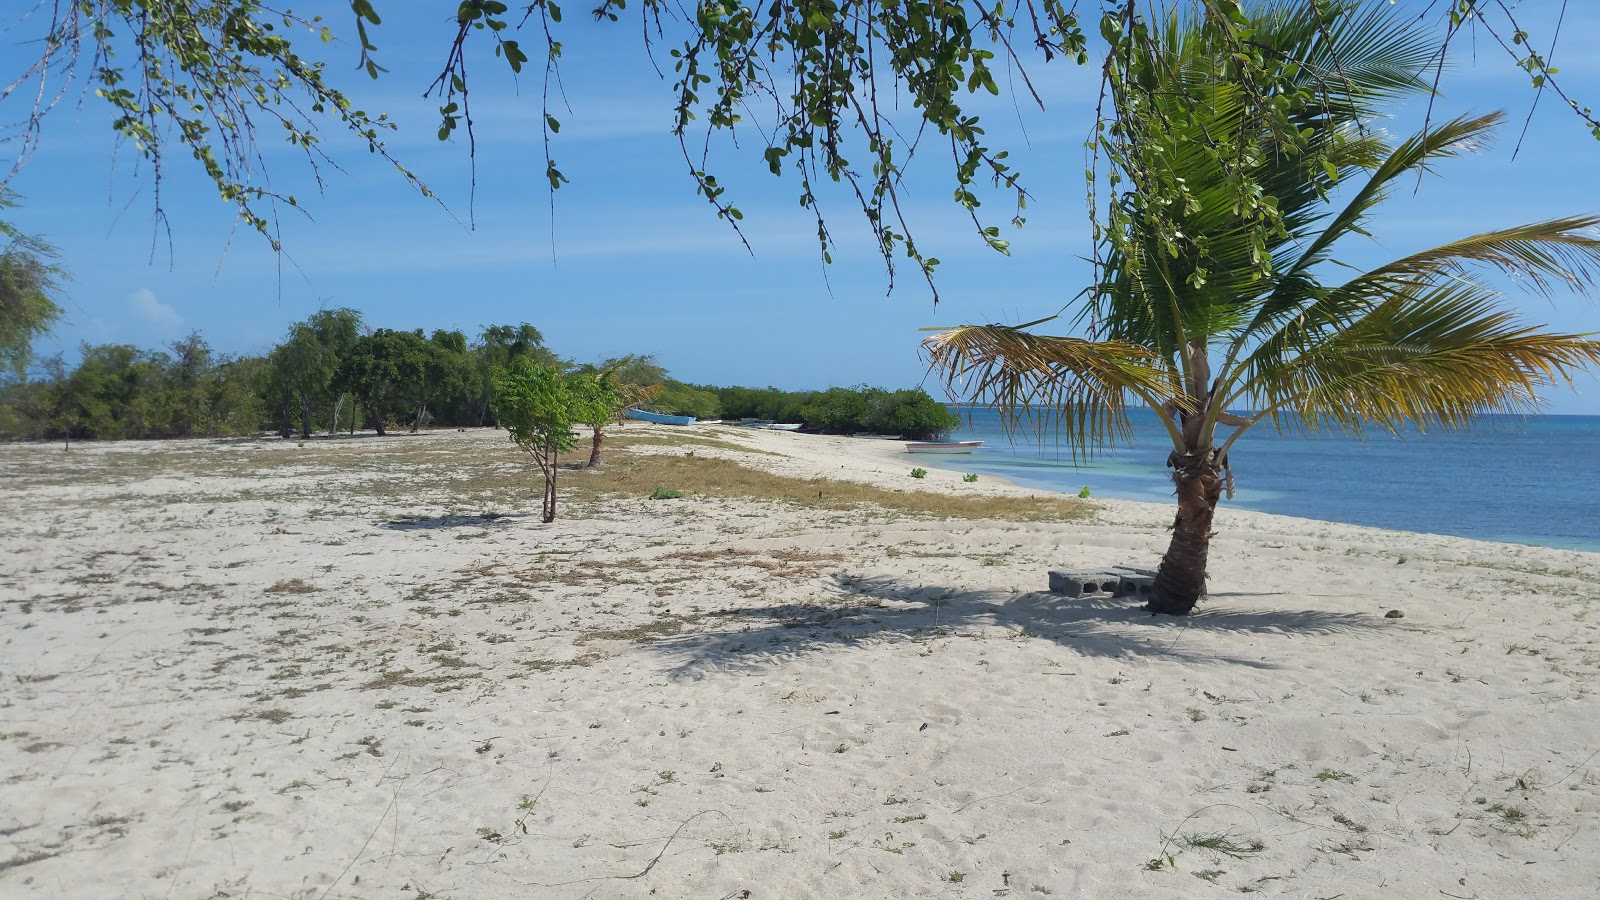 Fotografija Corbanitos beach nahaja se v naravnem okolju